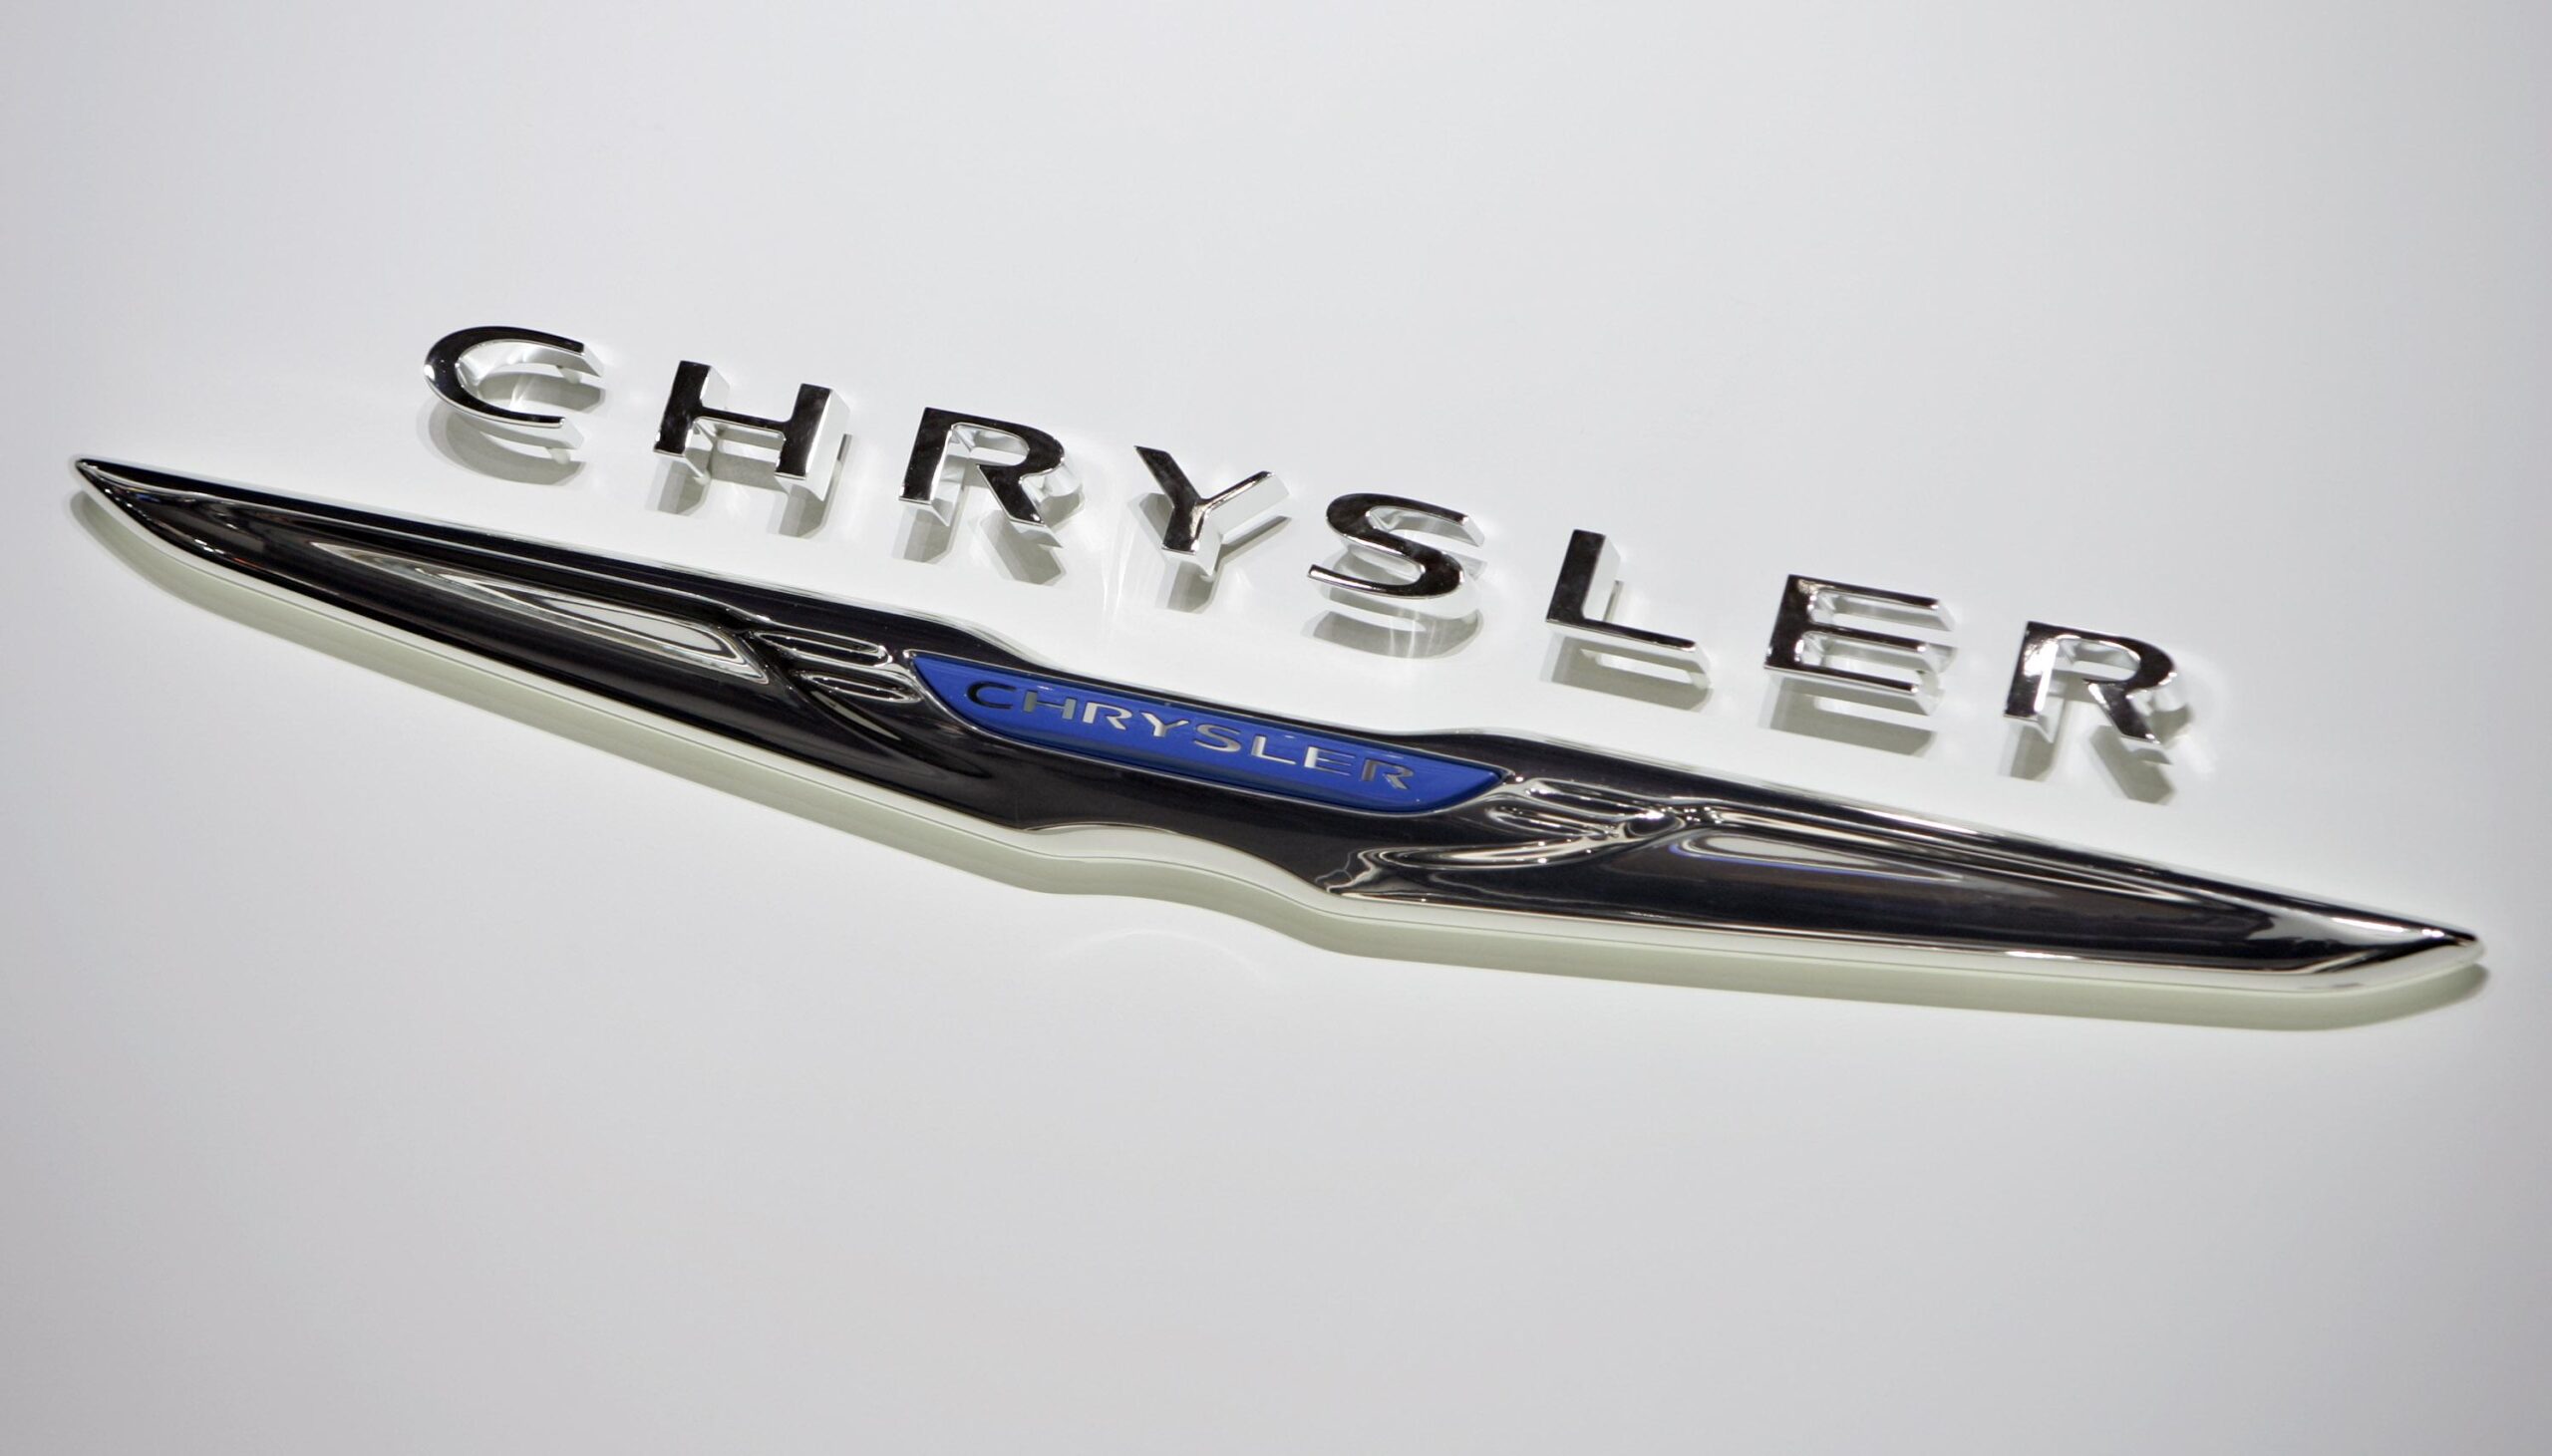 Chrysler Logo Wallpapers